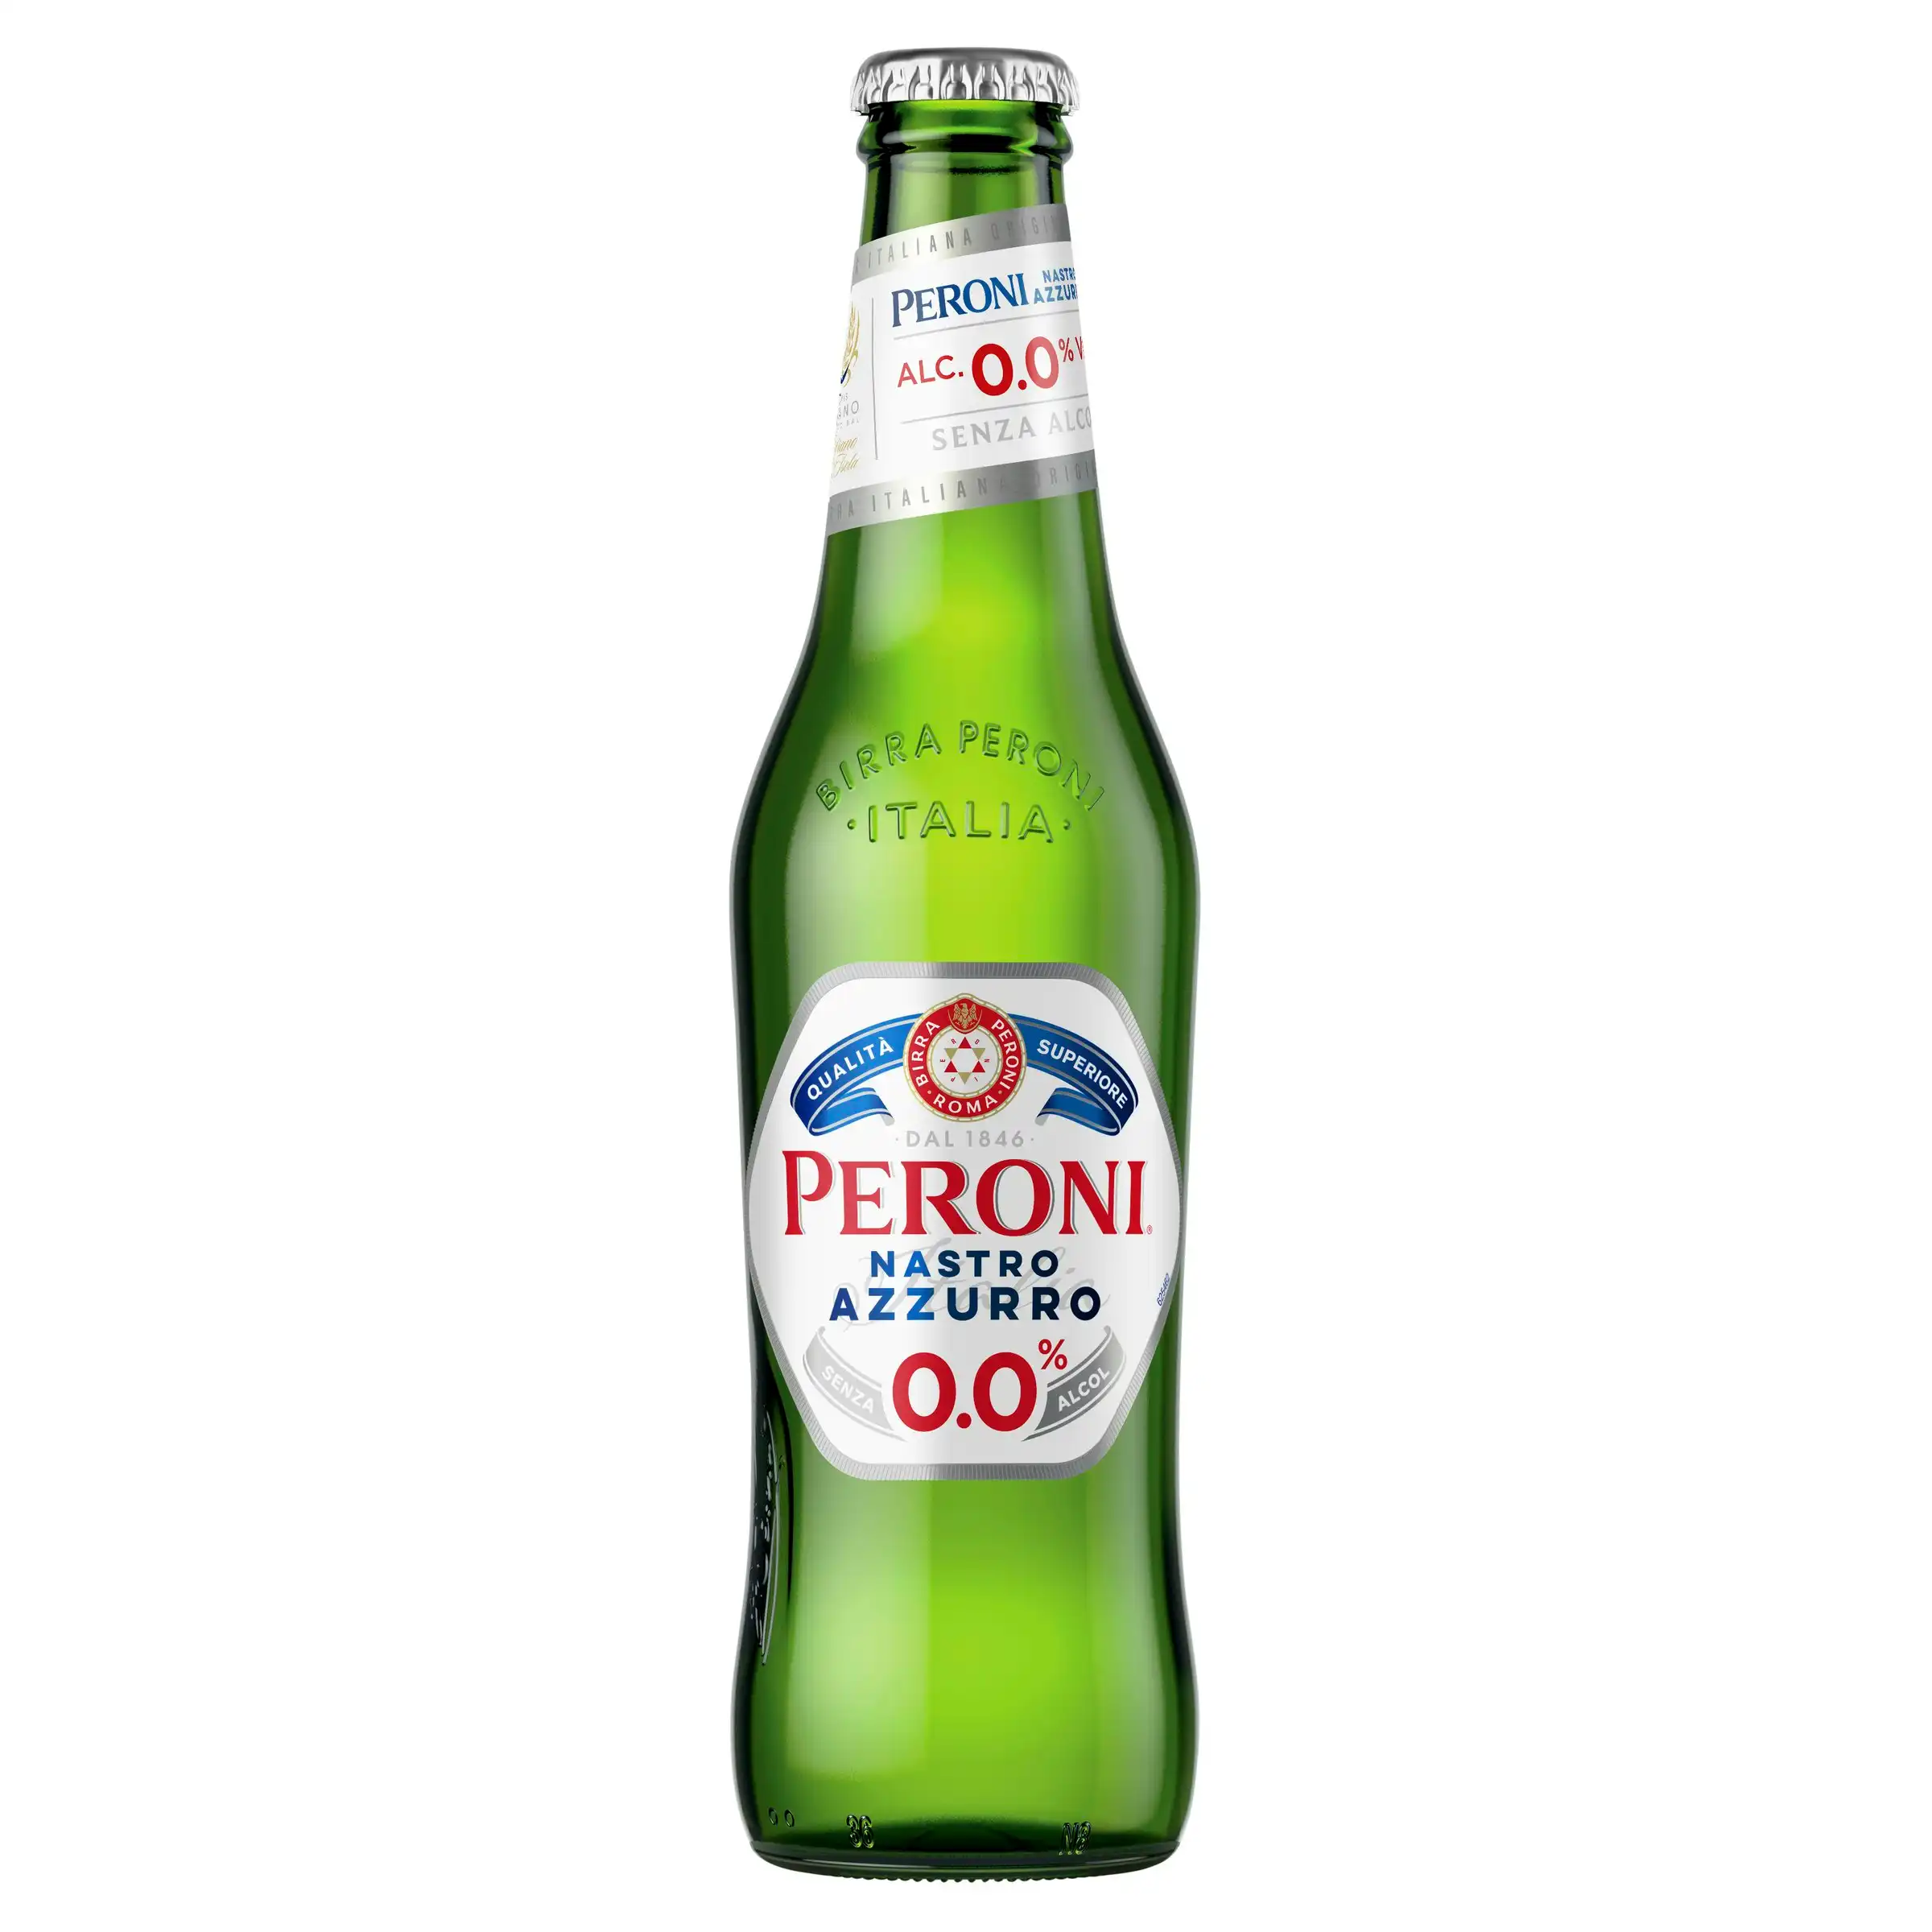 Peroni Nastro Azzuro 0.0% 24 x 330mL Bottles